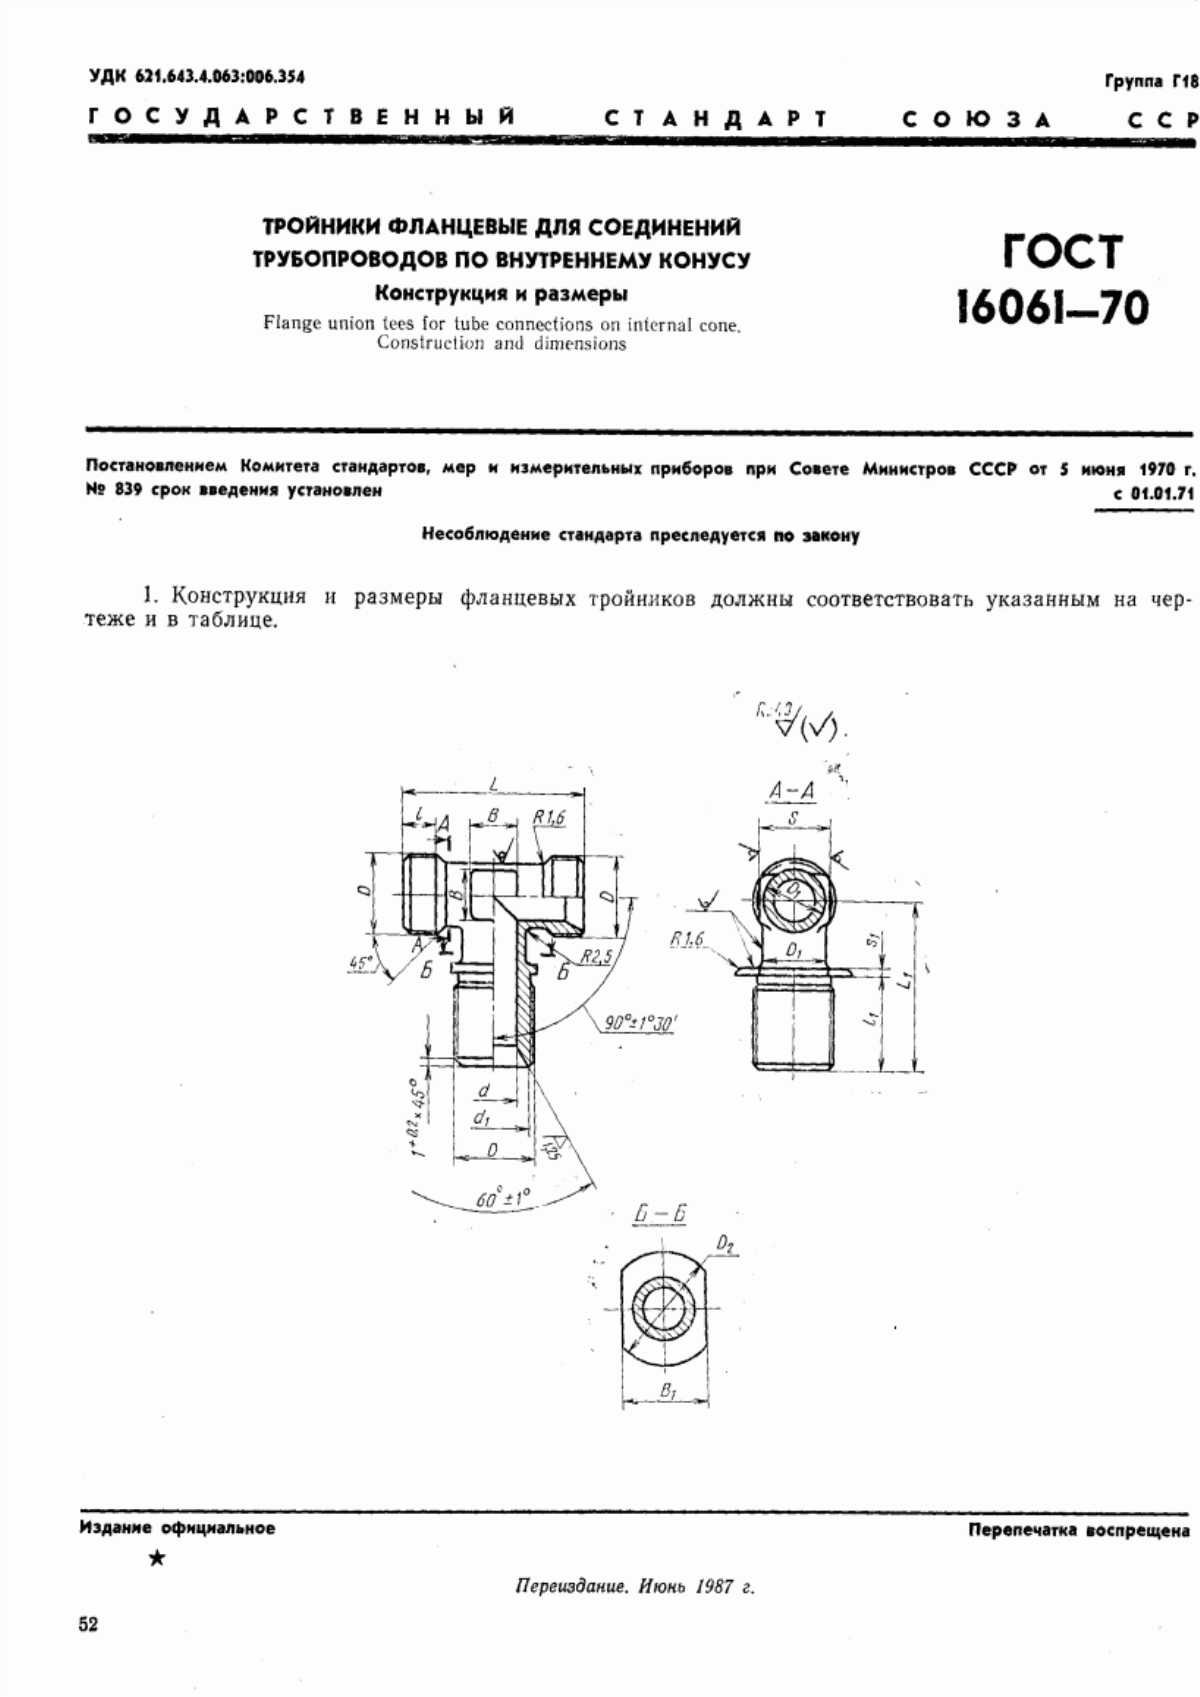 ГОСТ 16061-70 Тройники фланцевые для соединений трубопроводов по внутреннему конусу. Конструкция и размеры